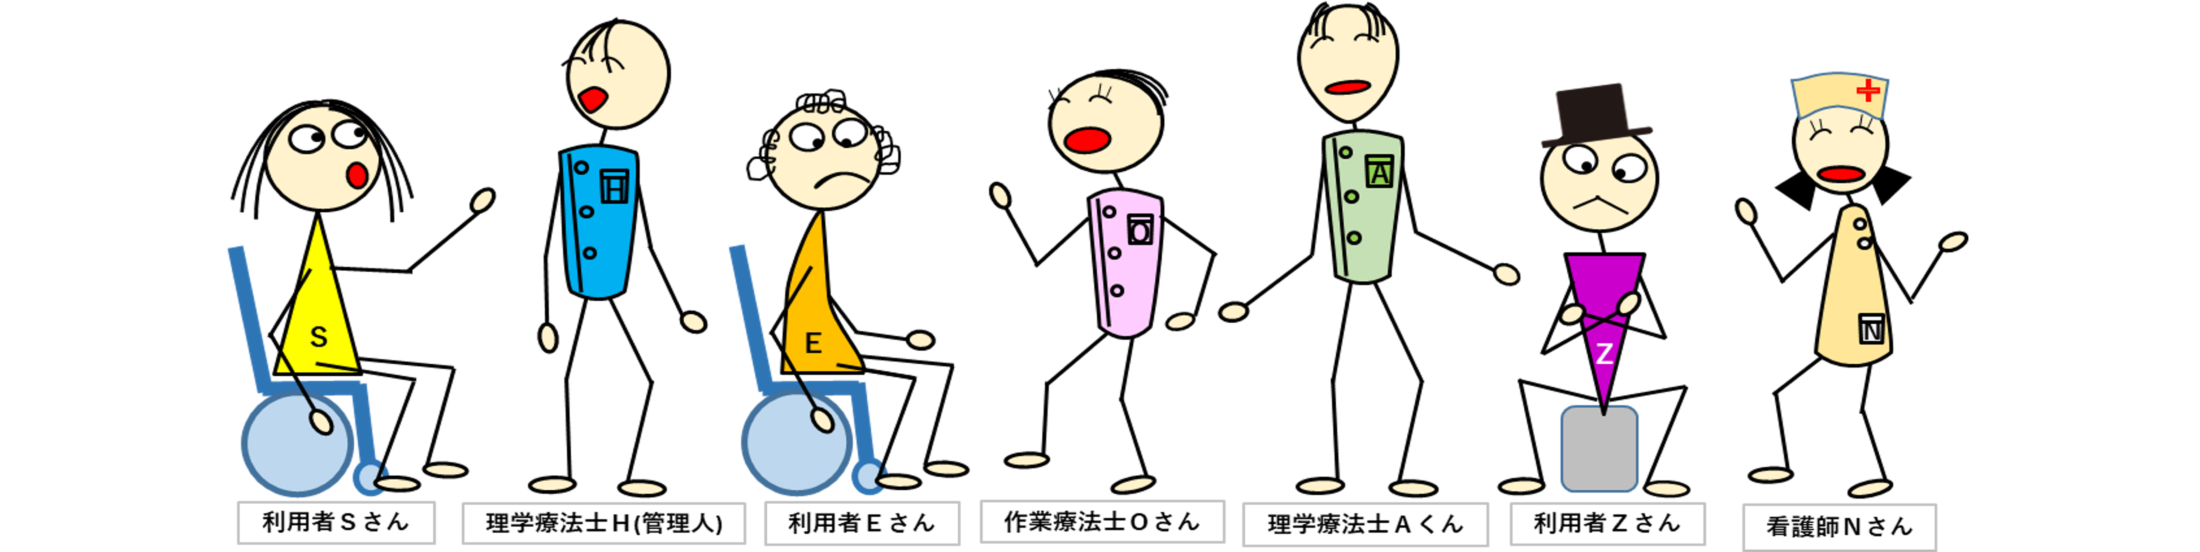 相田みつをさんに学ぶ 柔らかい心 セトモノとセトモノとぶつかりっこする 4コマ漫画で考えるリハビリ脳の作り方